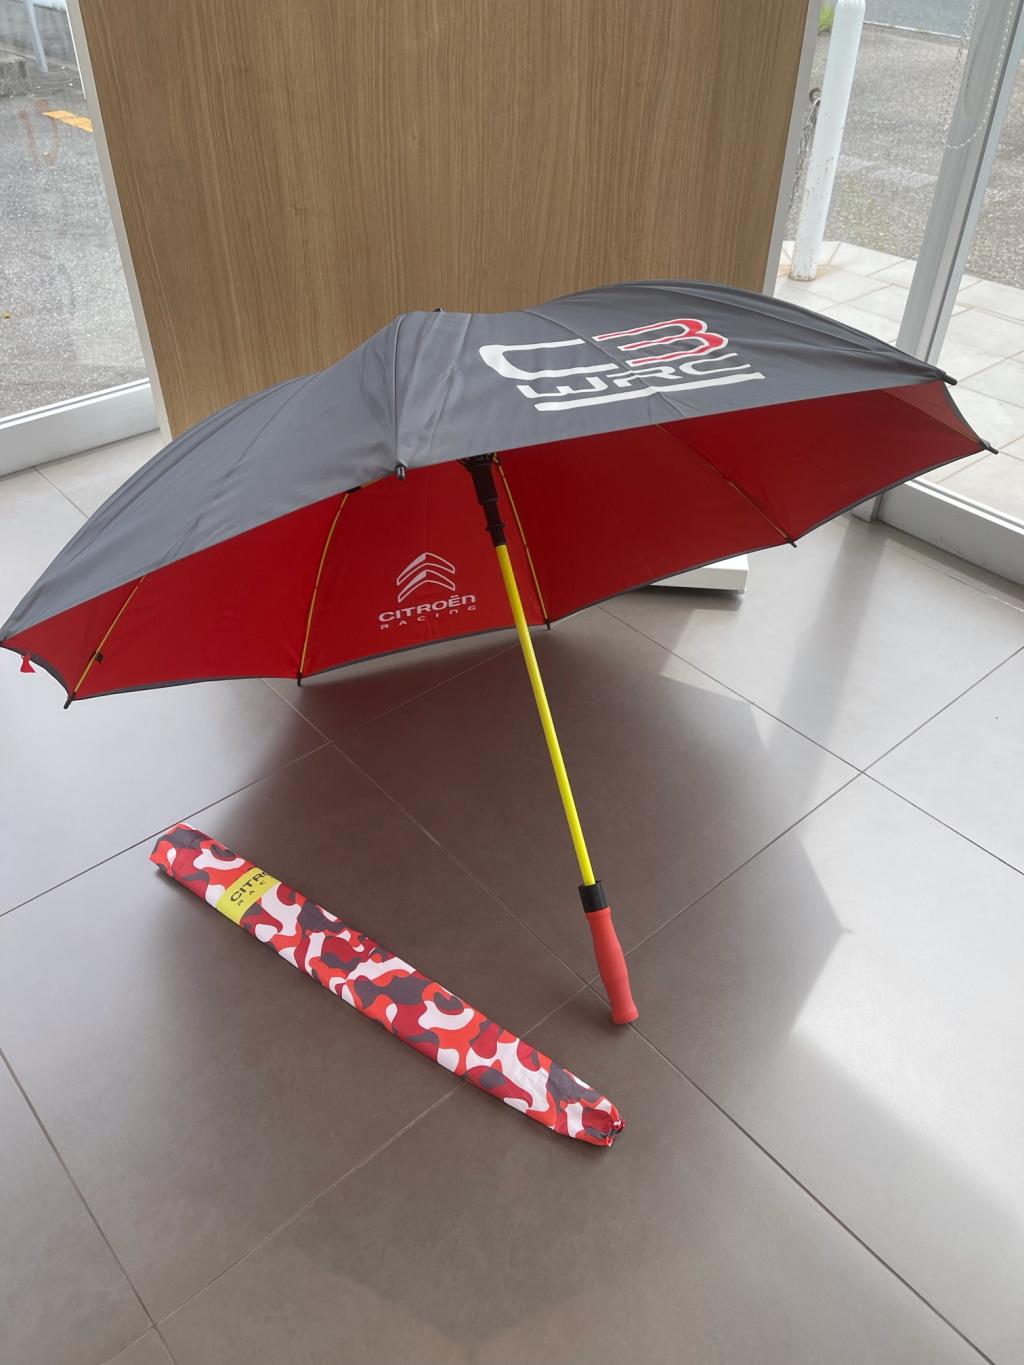 CITROEN umbrella